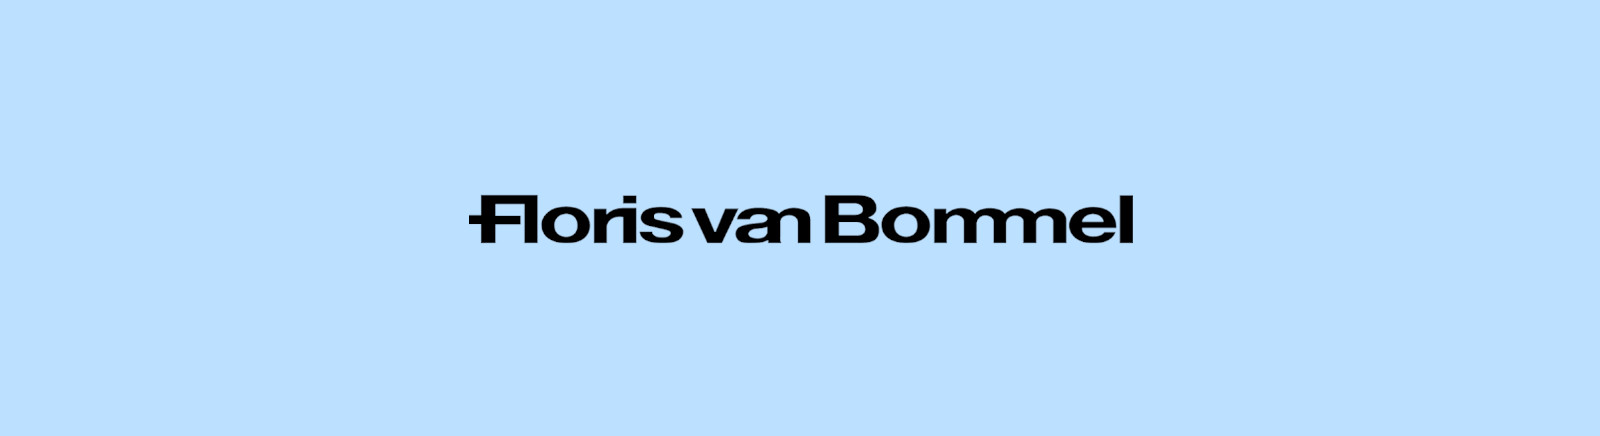 Floris van Bommel Markenschuhe online entdecken im Juppen Shop